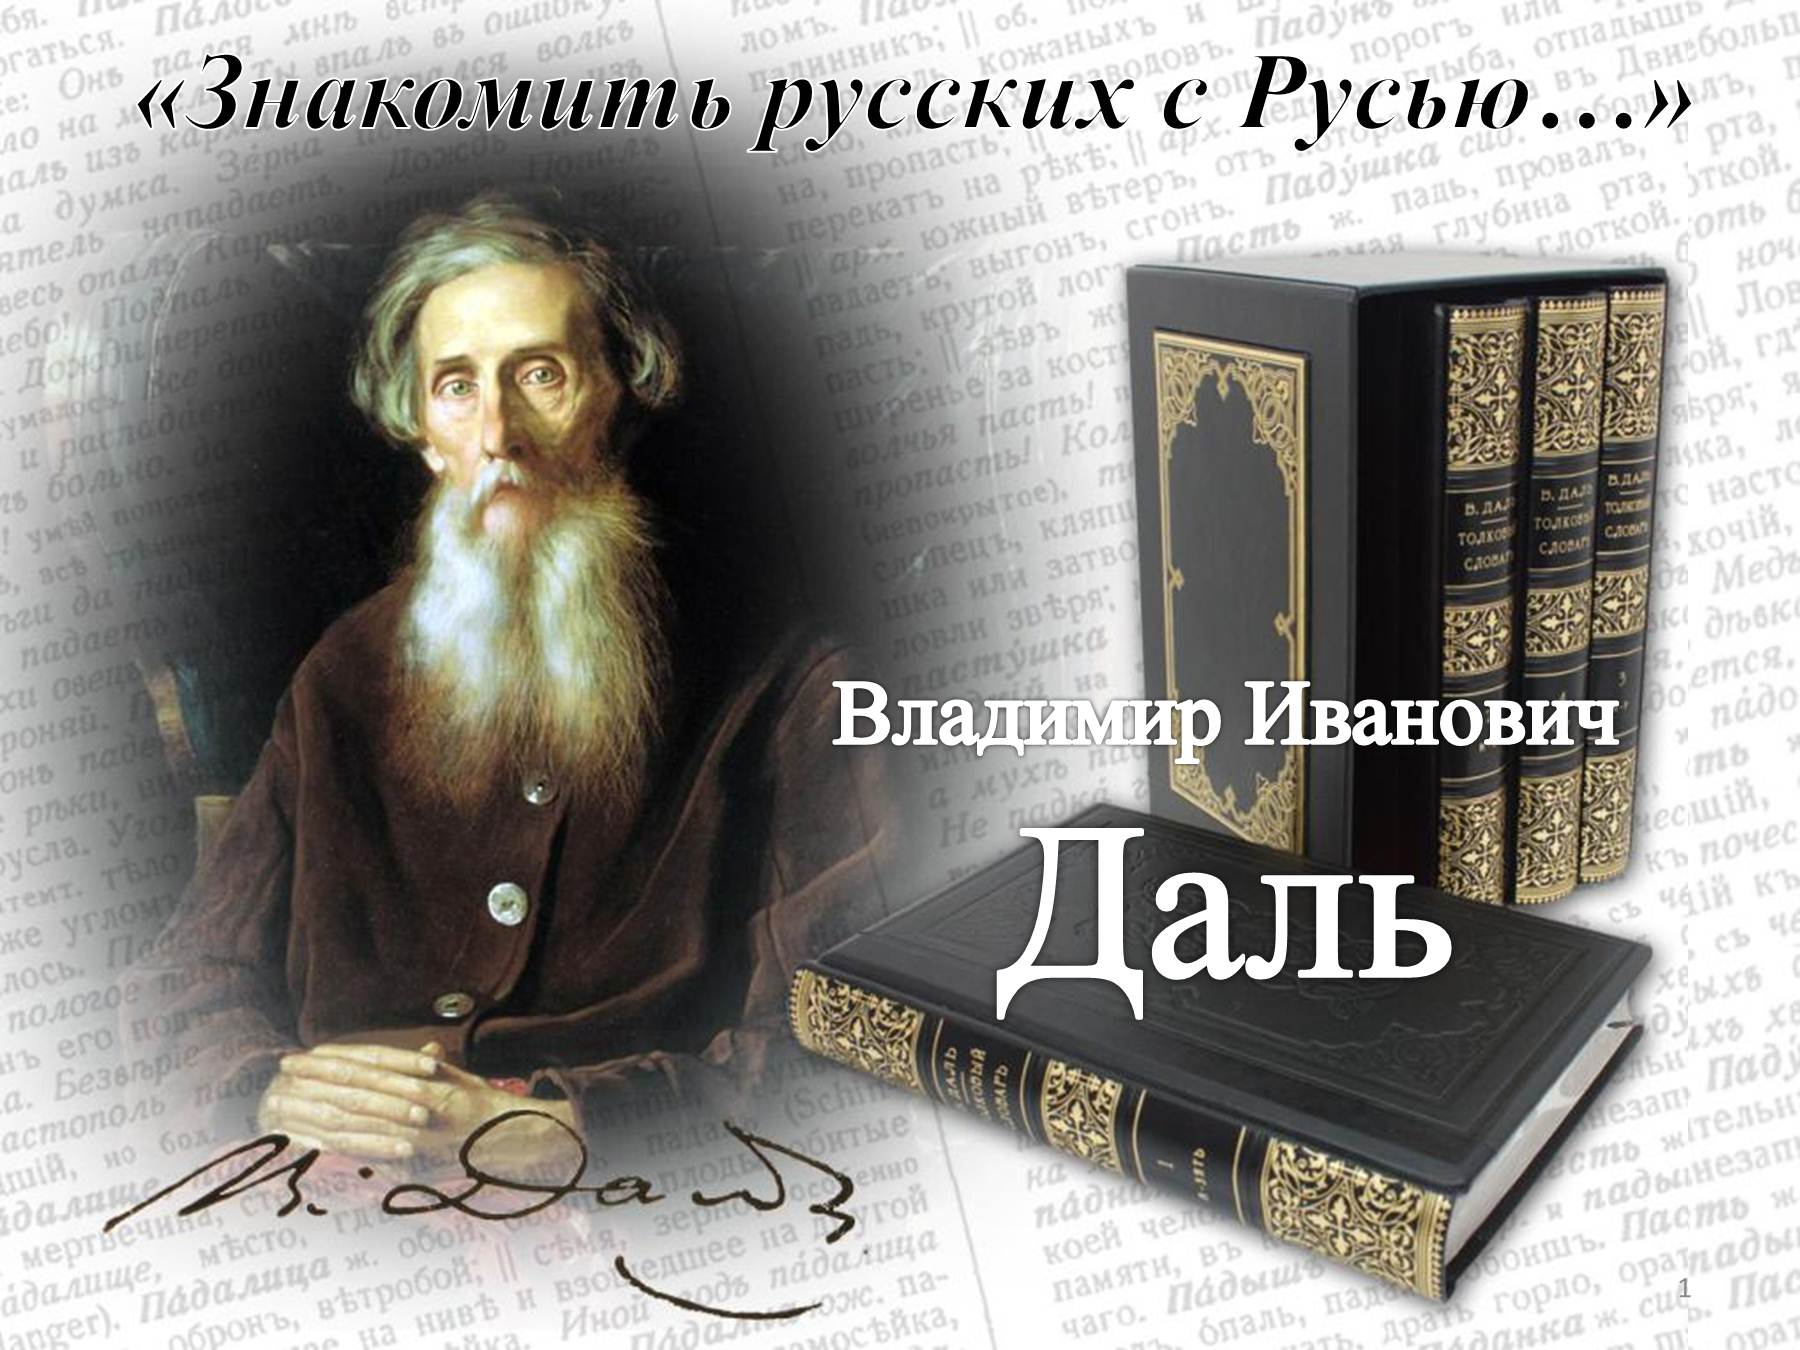 22 ноября – День словарей и энциклопедий.